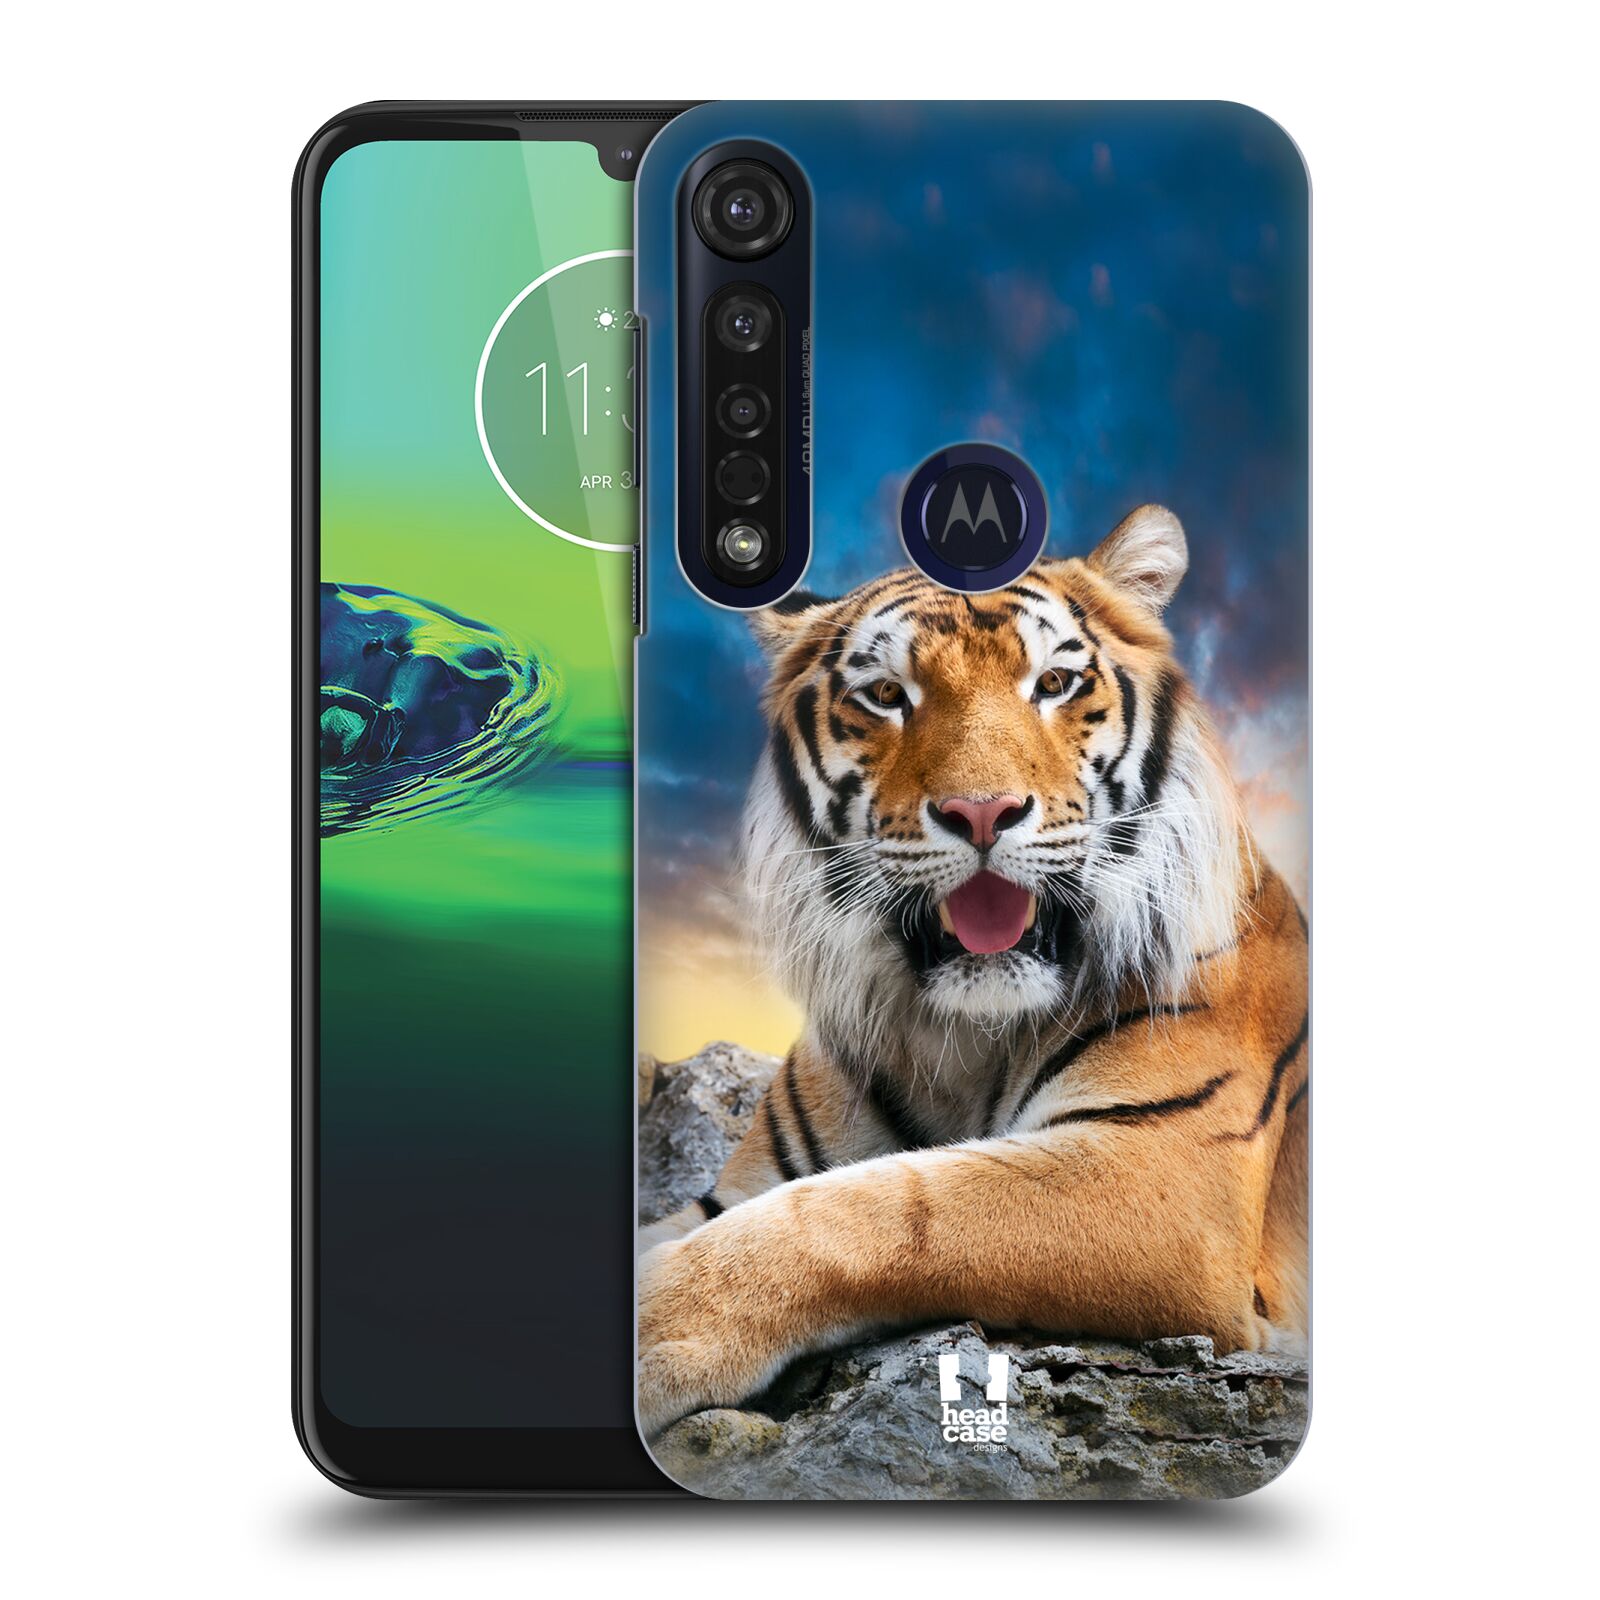  Pouzdro na mobil Motorola Moto G8 PLUS - HEAD CASE - vzor Divočina, Divoký život a zvířata foto TYGR A NEBE